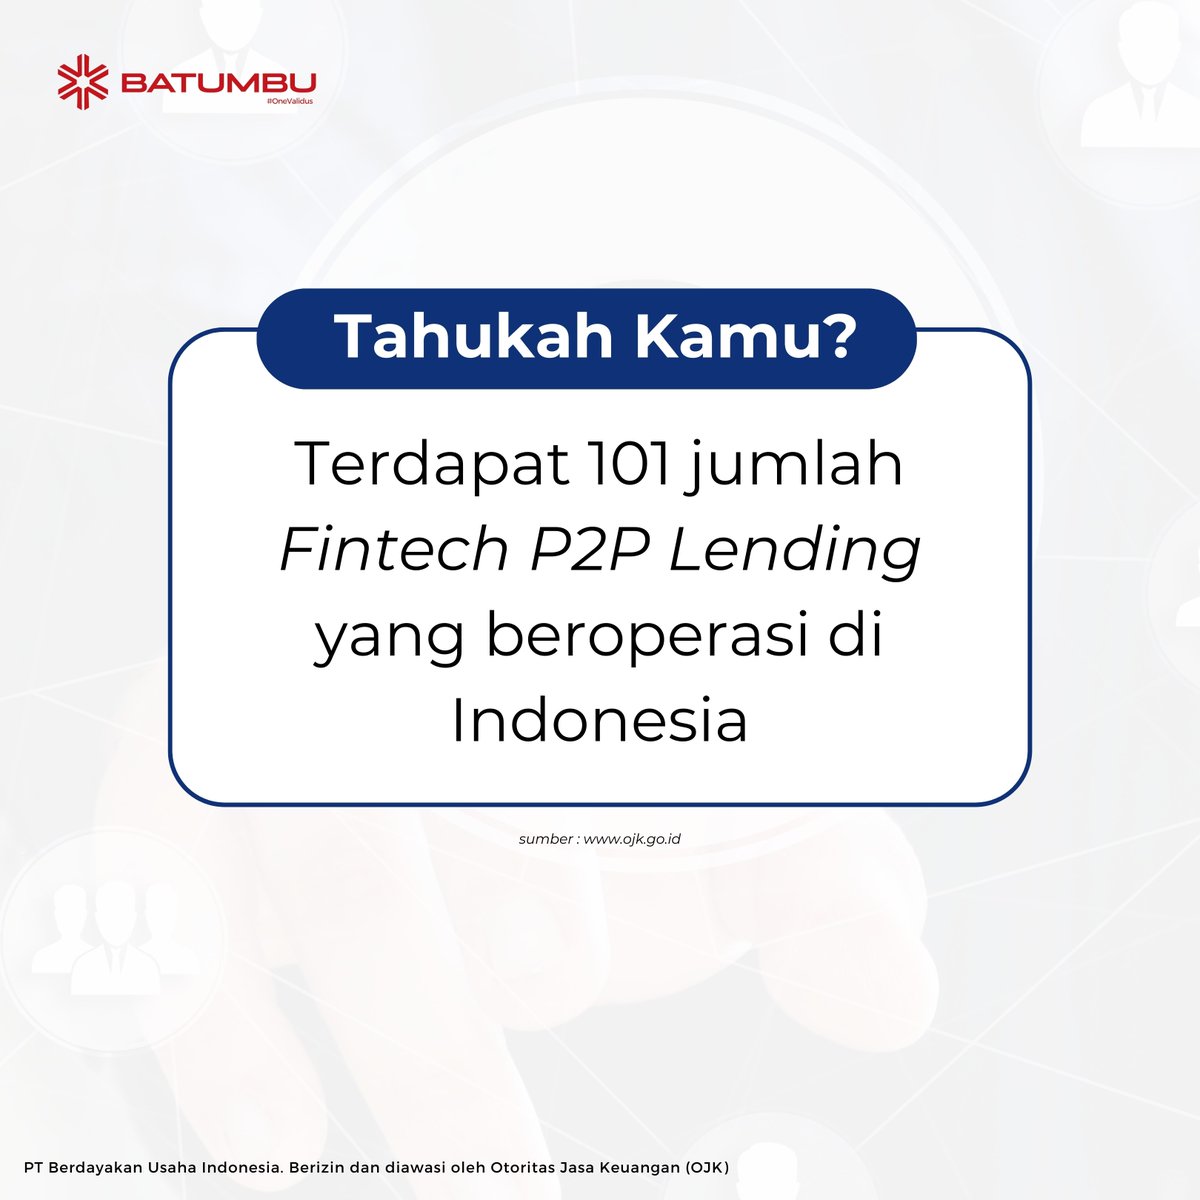 Kamu bisa cek melalui website resmi OJK
untuk mengetahui daftar Fintech P2P Lending yang
legal dan aktif di Indonesia.

#BatumbuBersamaMu
#BatumbuBersamaValidus

#Batumbu #P2Plending #Fintech #FintechIndonesia
#UMKM #TumbuSeries #TumbuPedia #Affiliate